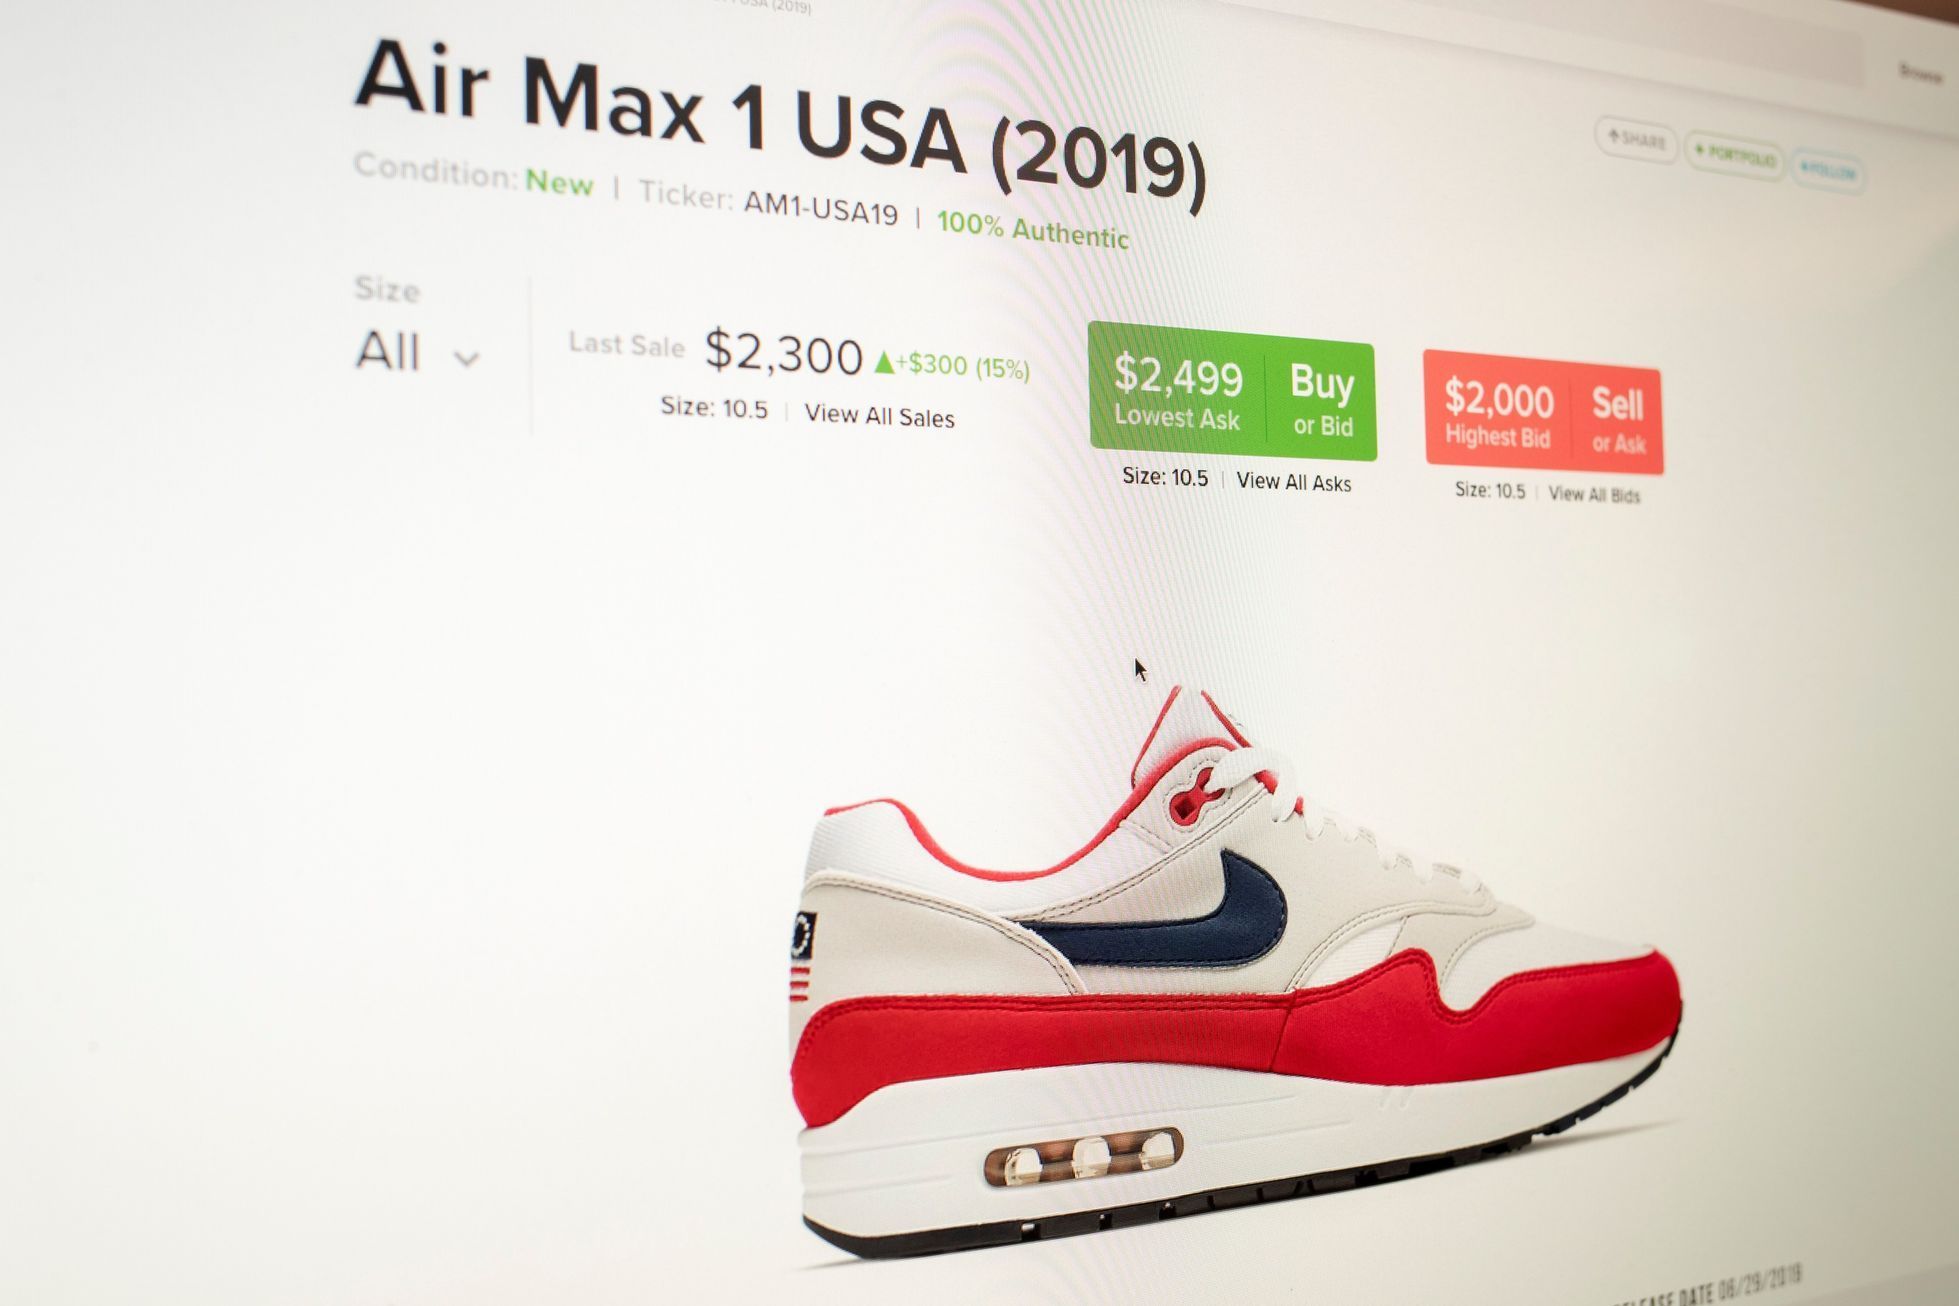 Firma Nike stáhla z prodeje tenisky se starší verzí vlajky Spojených států, kterou začala jako svůj symbol používat Americká nacistická strana.